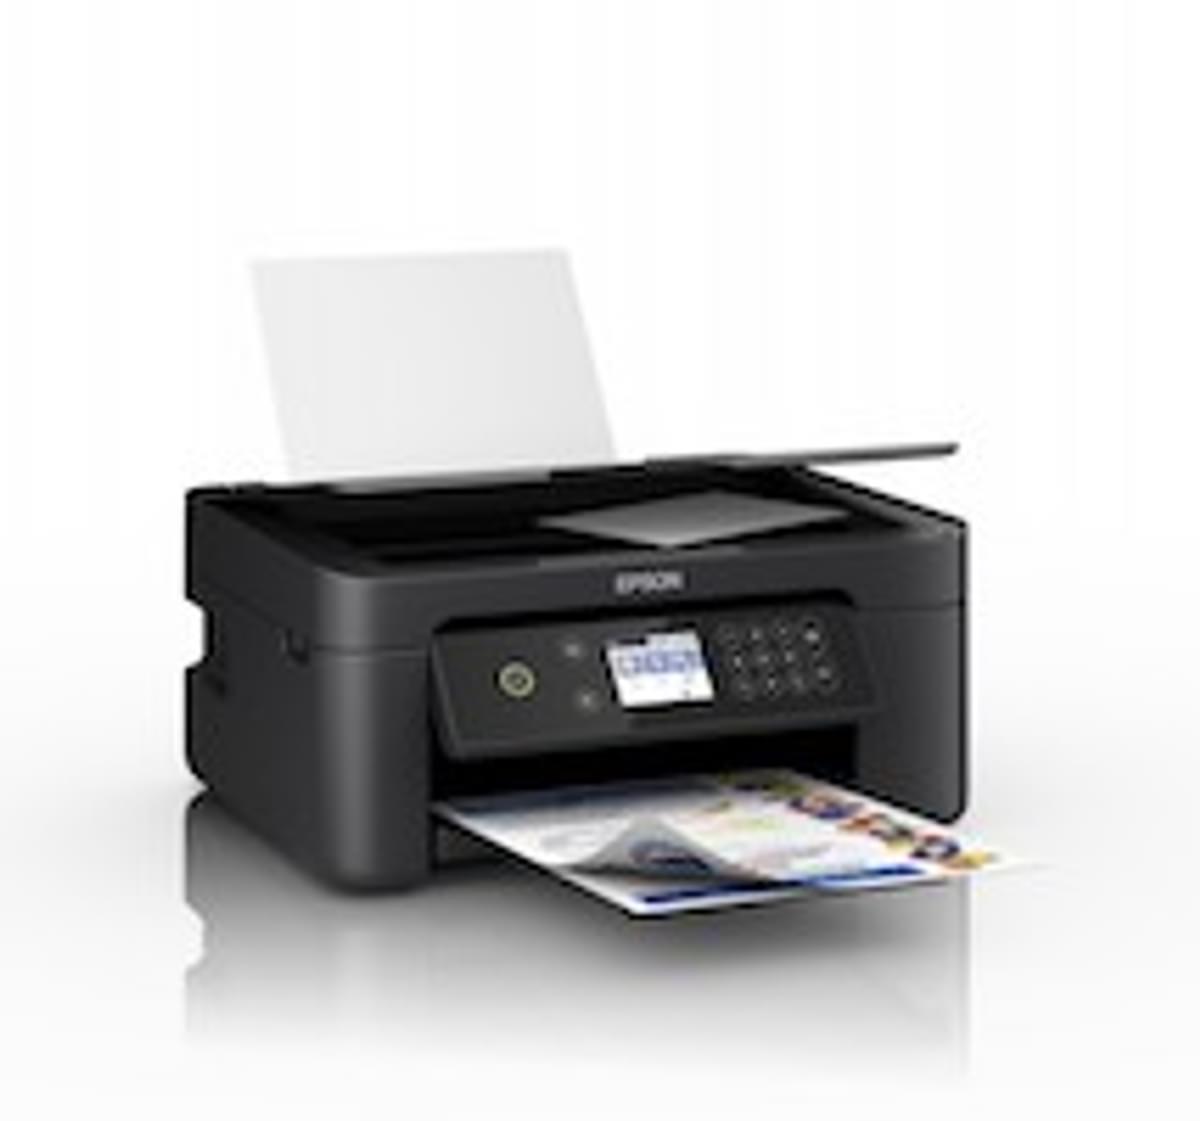 Verkoop printers stijgt licht image